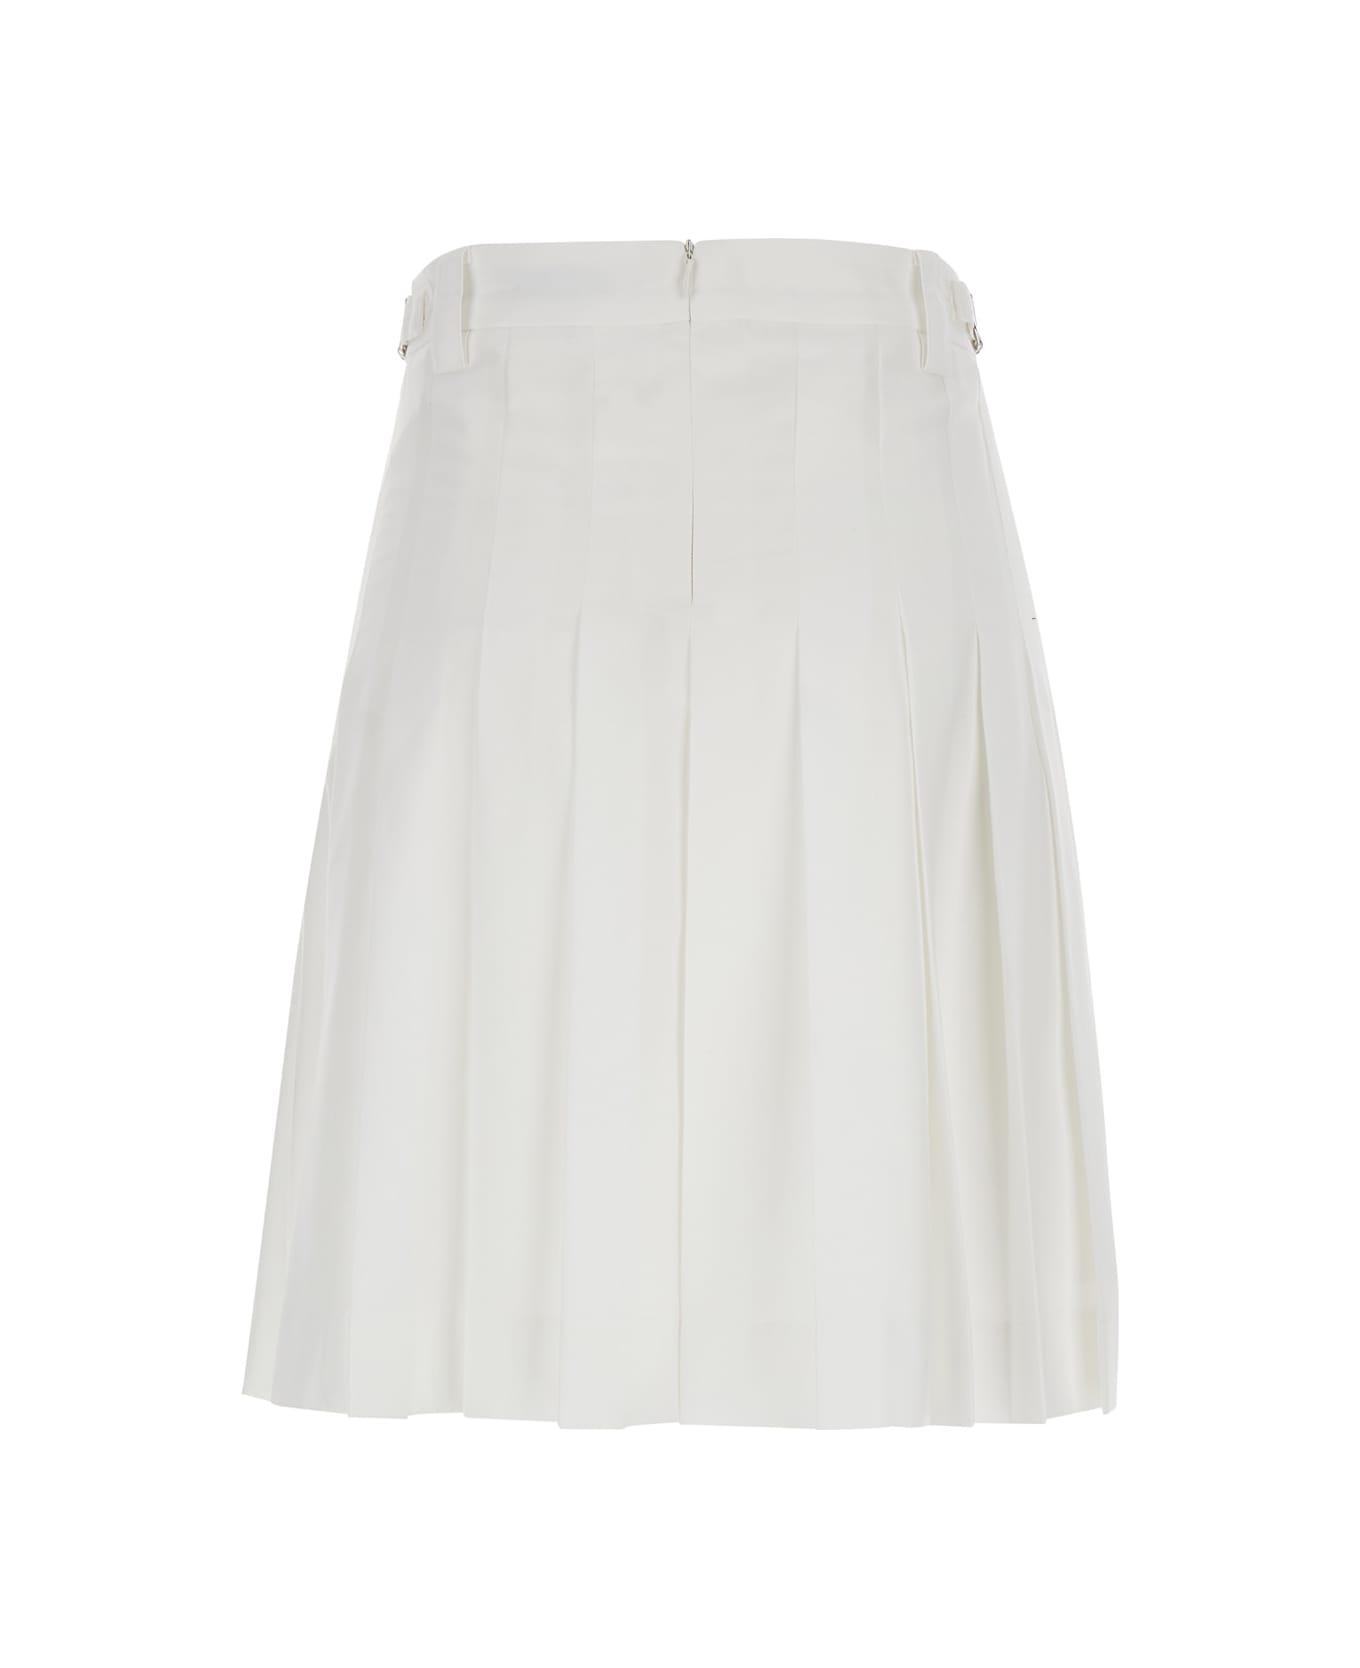 Dunst Midi Pleats Skirt - White スカート